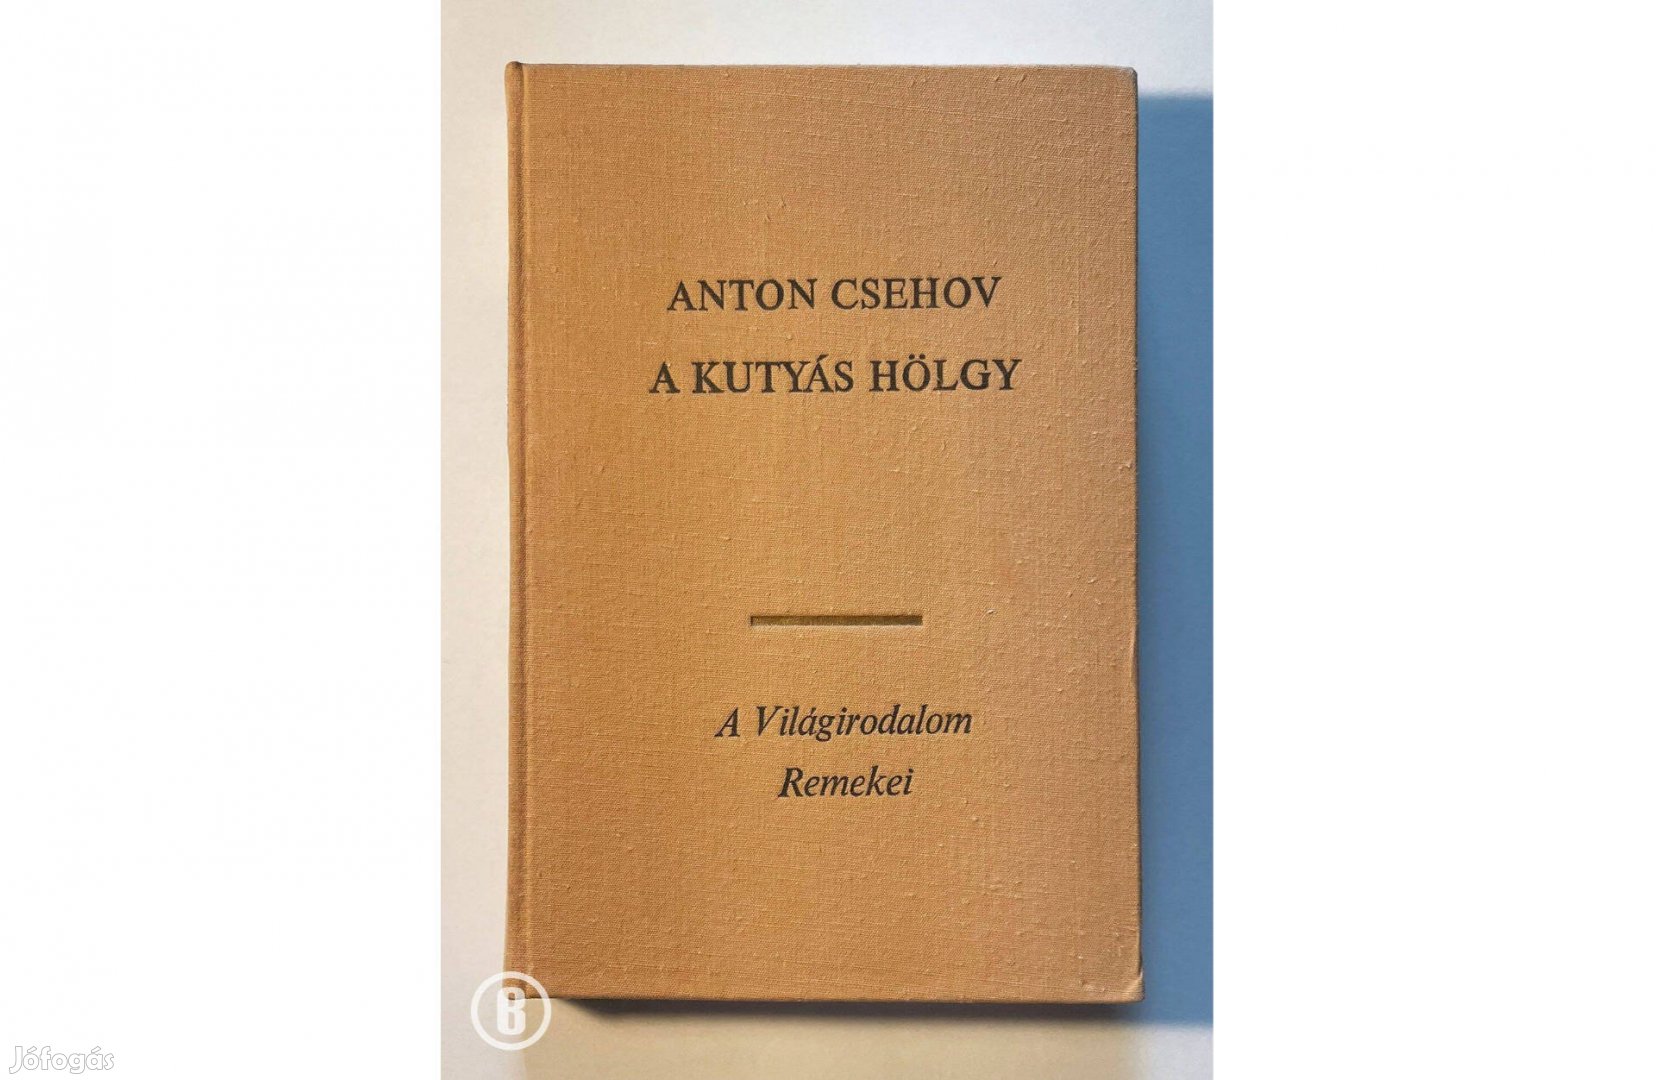 Anton Csehov: A kutyás hölgy